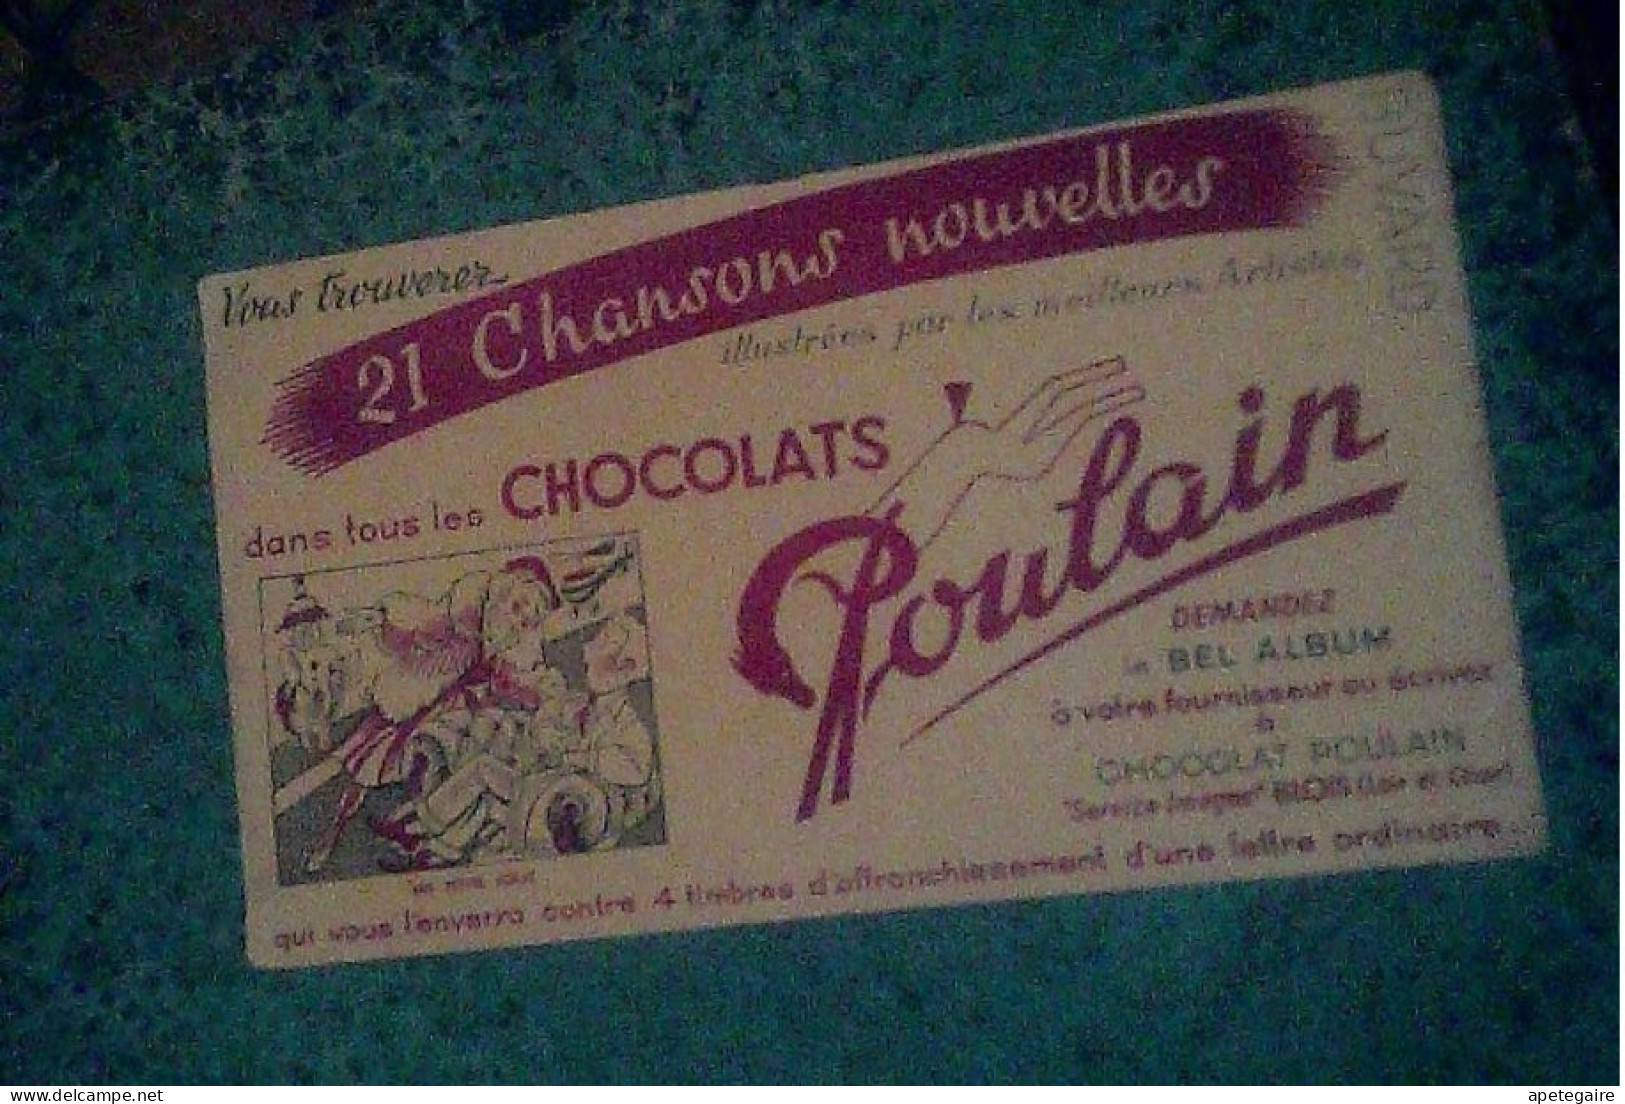 Lot 2 protege cahier + un buvard chocolats  Poulain vendus en l' état  jus de greniers